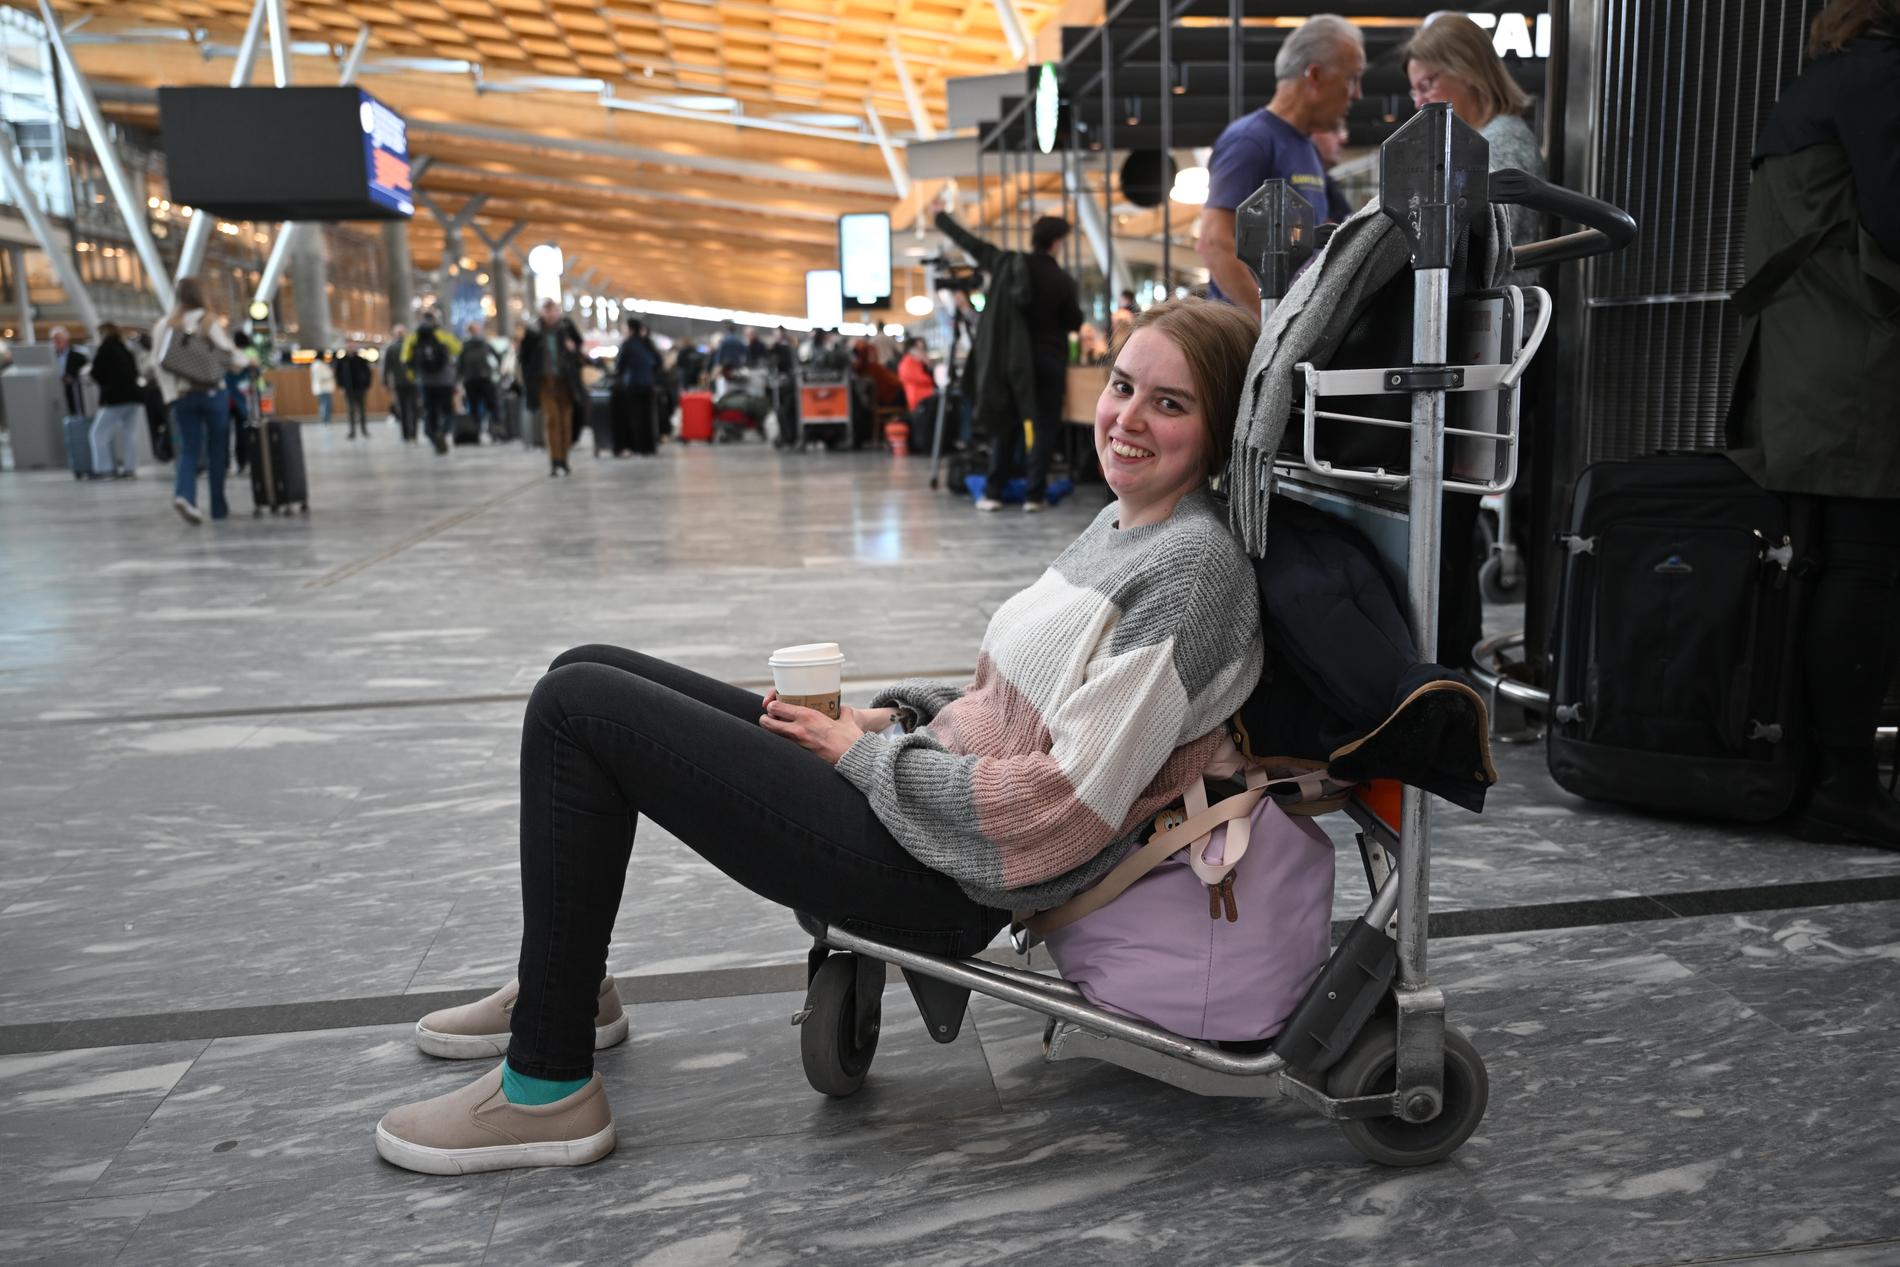  Kathrine Ilebakke venter på flyet sitt til Sveits. 